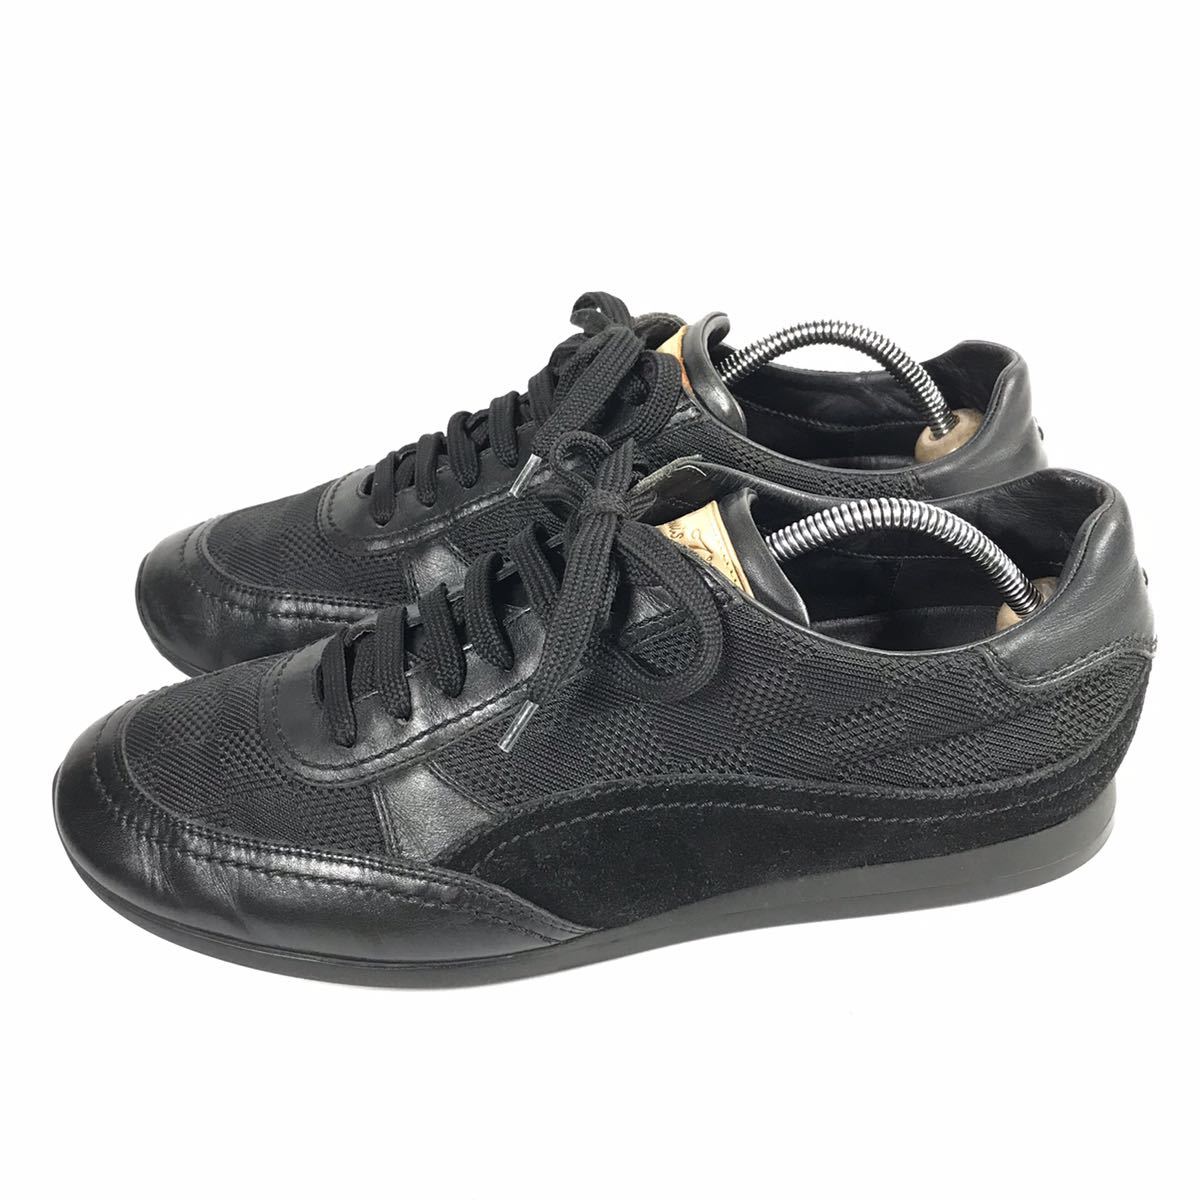 【ルイヴィトン】本物 LOUIS VUITTON 靴 26.5cm 黒 ダミエ スニーカー カジュアルシューズ レザー×スエード×メッシュ 紳士 メンズ 伊製 8_画像6